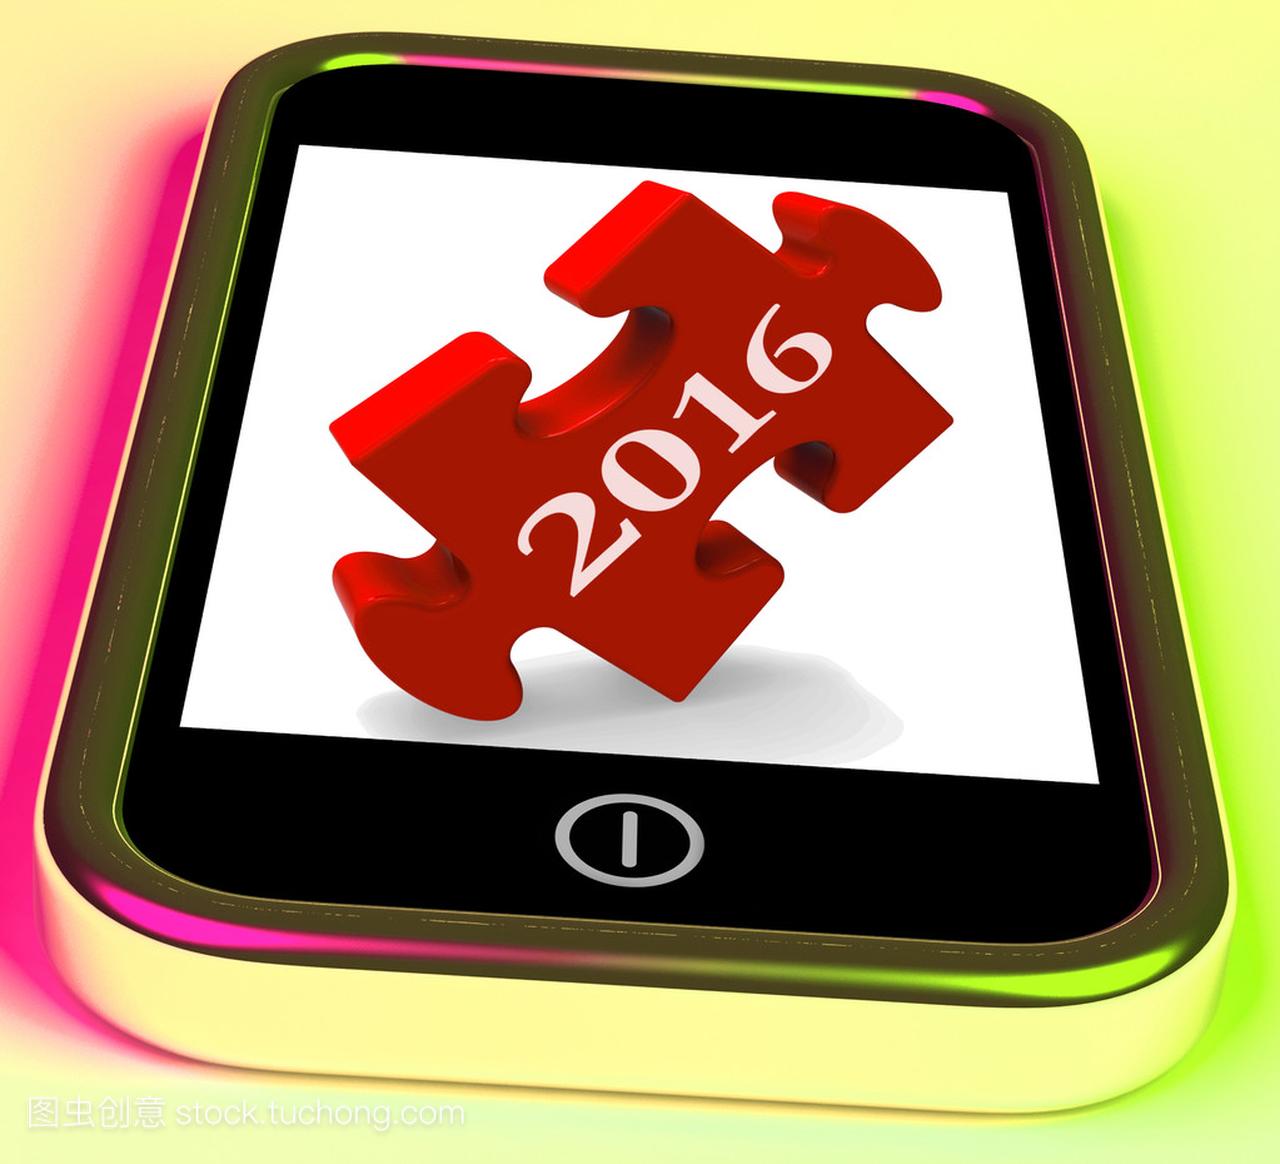 2016 在智能手机上的显示了未来新的一年愿景